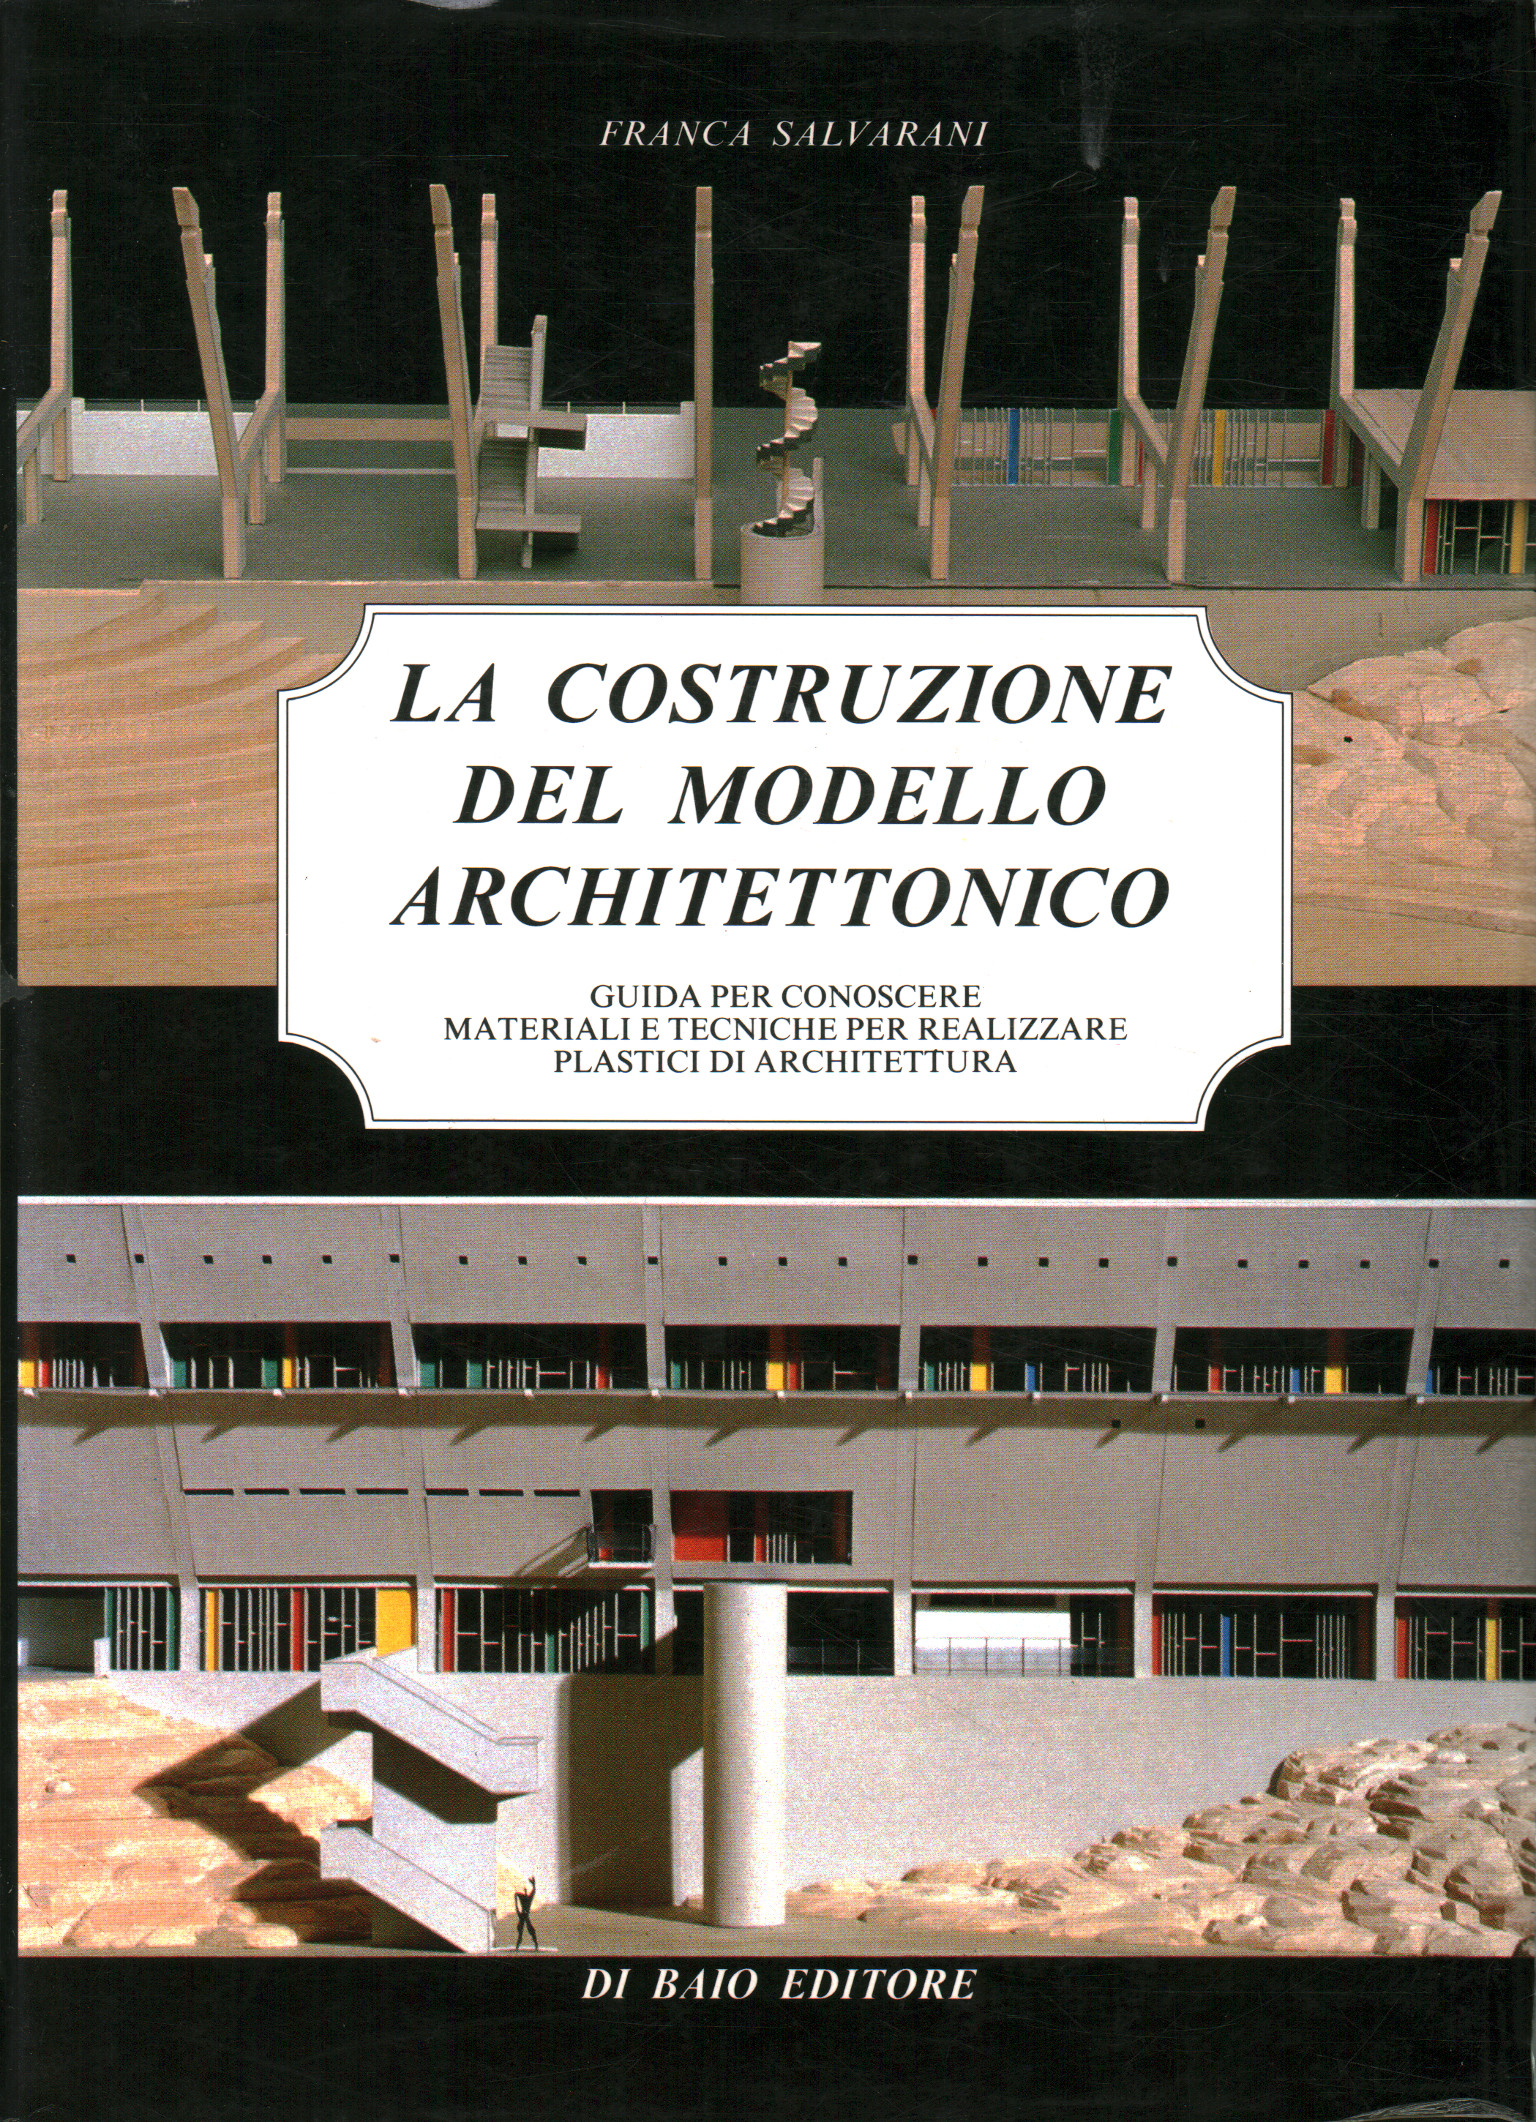 Die Konstruktion des Architekturmodells